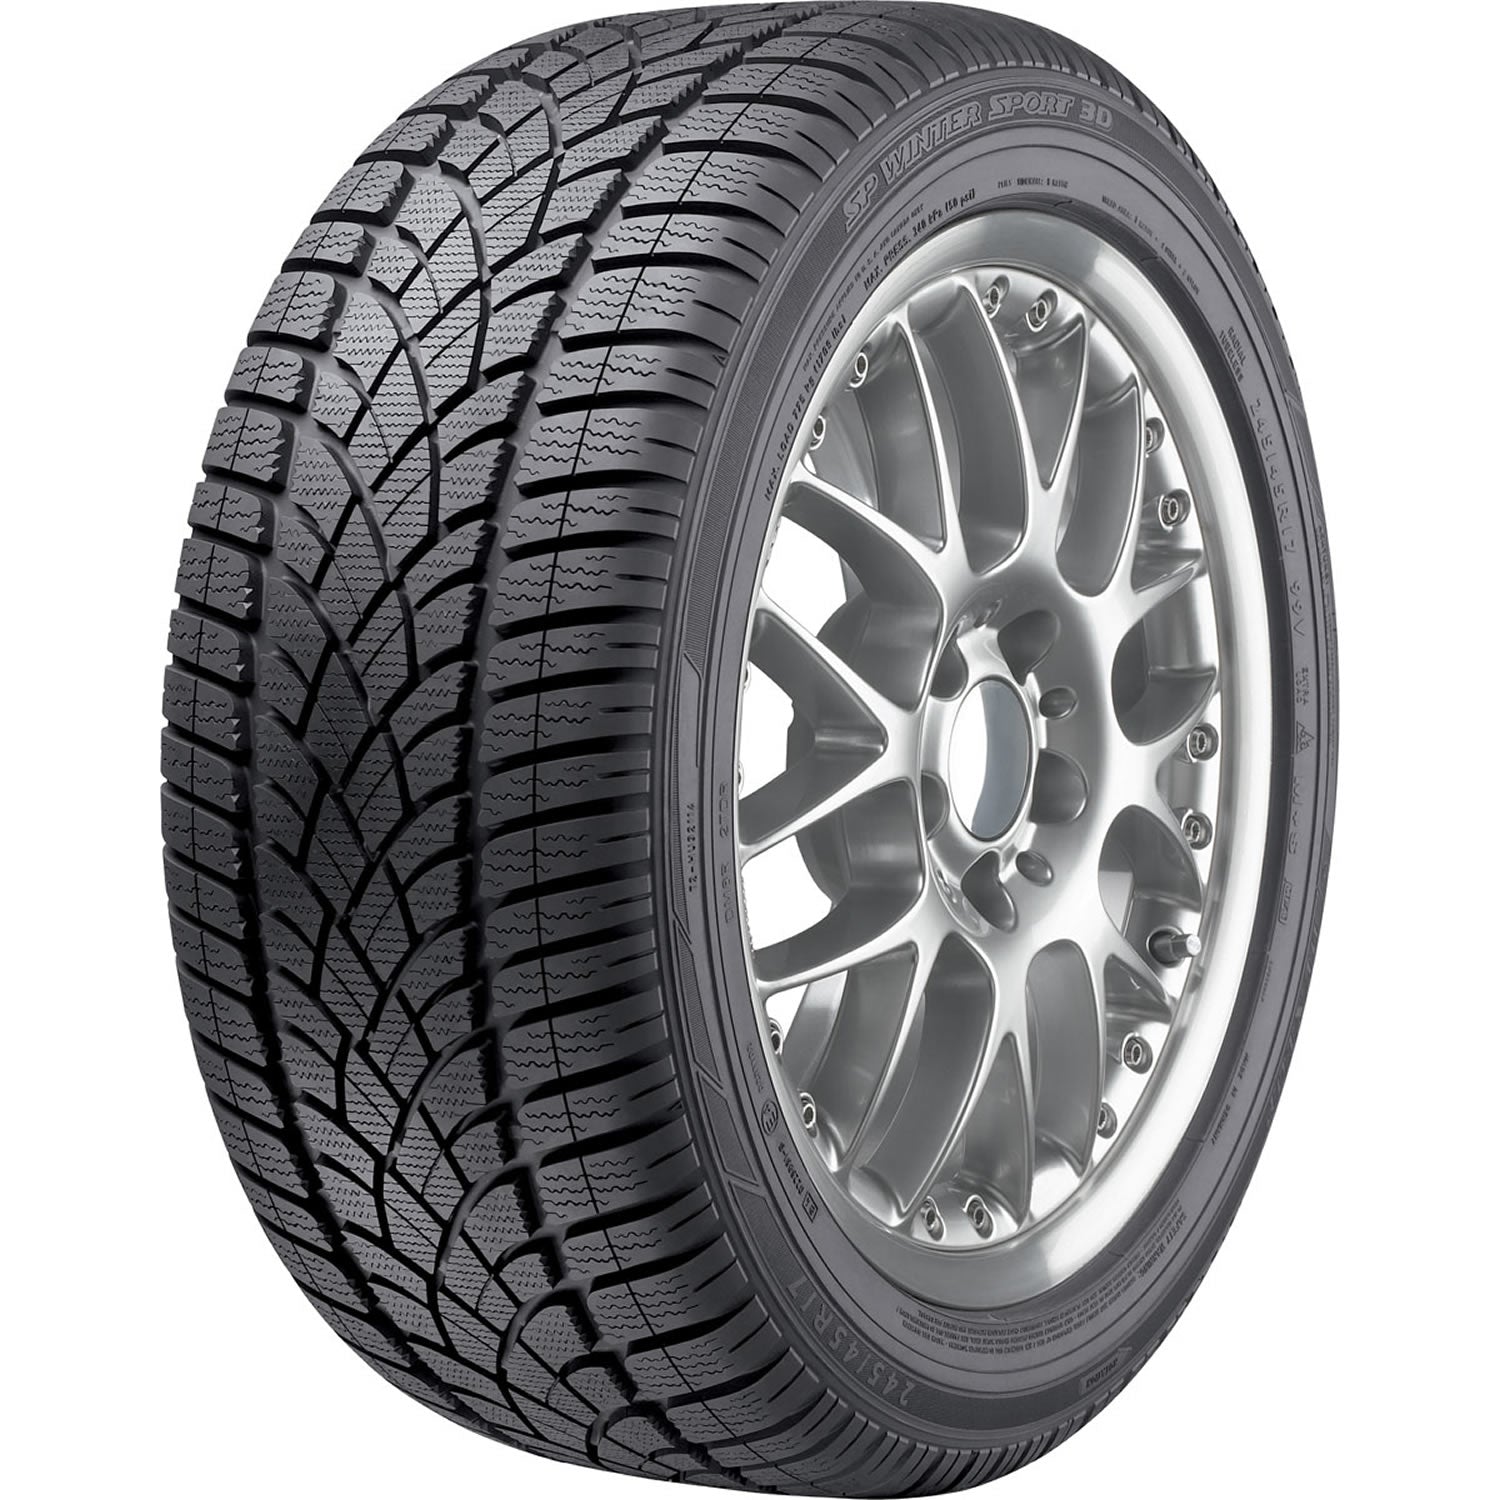 DUNLOP SP WINTER SPORT 3D 235/55R17 (27.2X9.7R 17) Tires